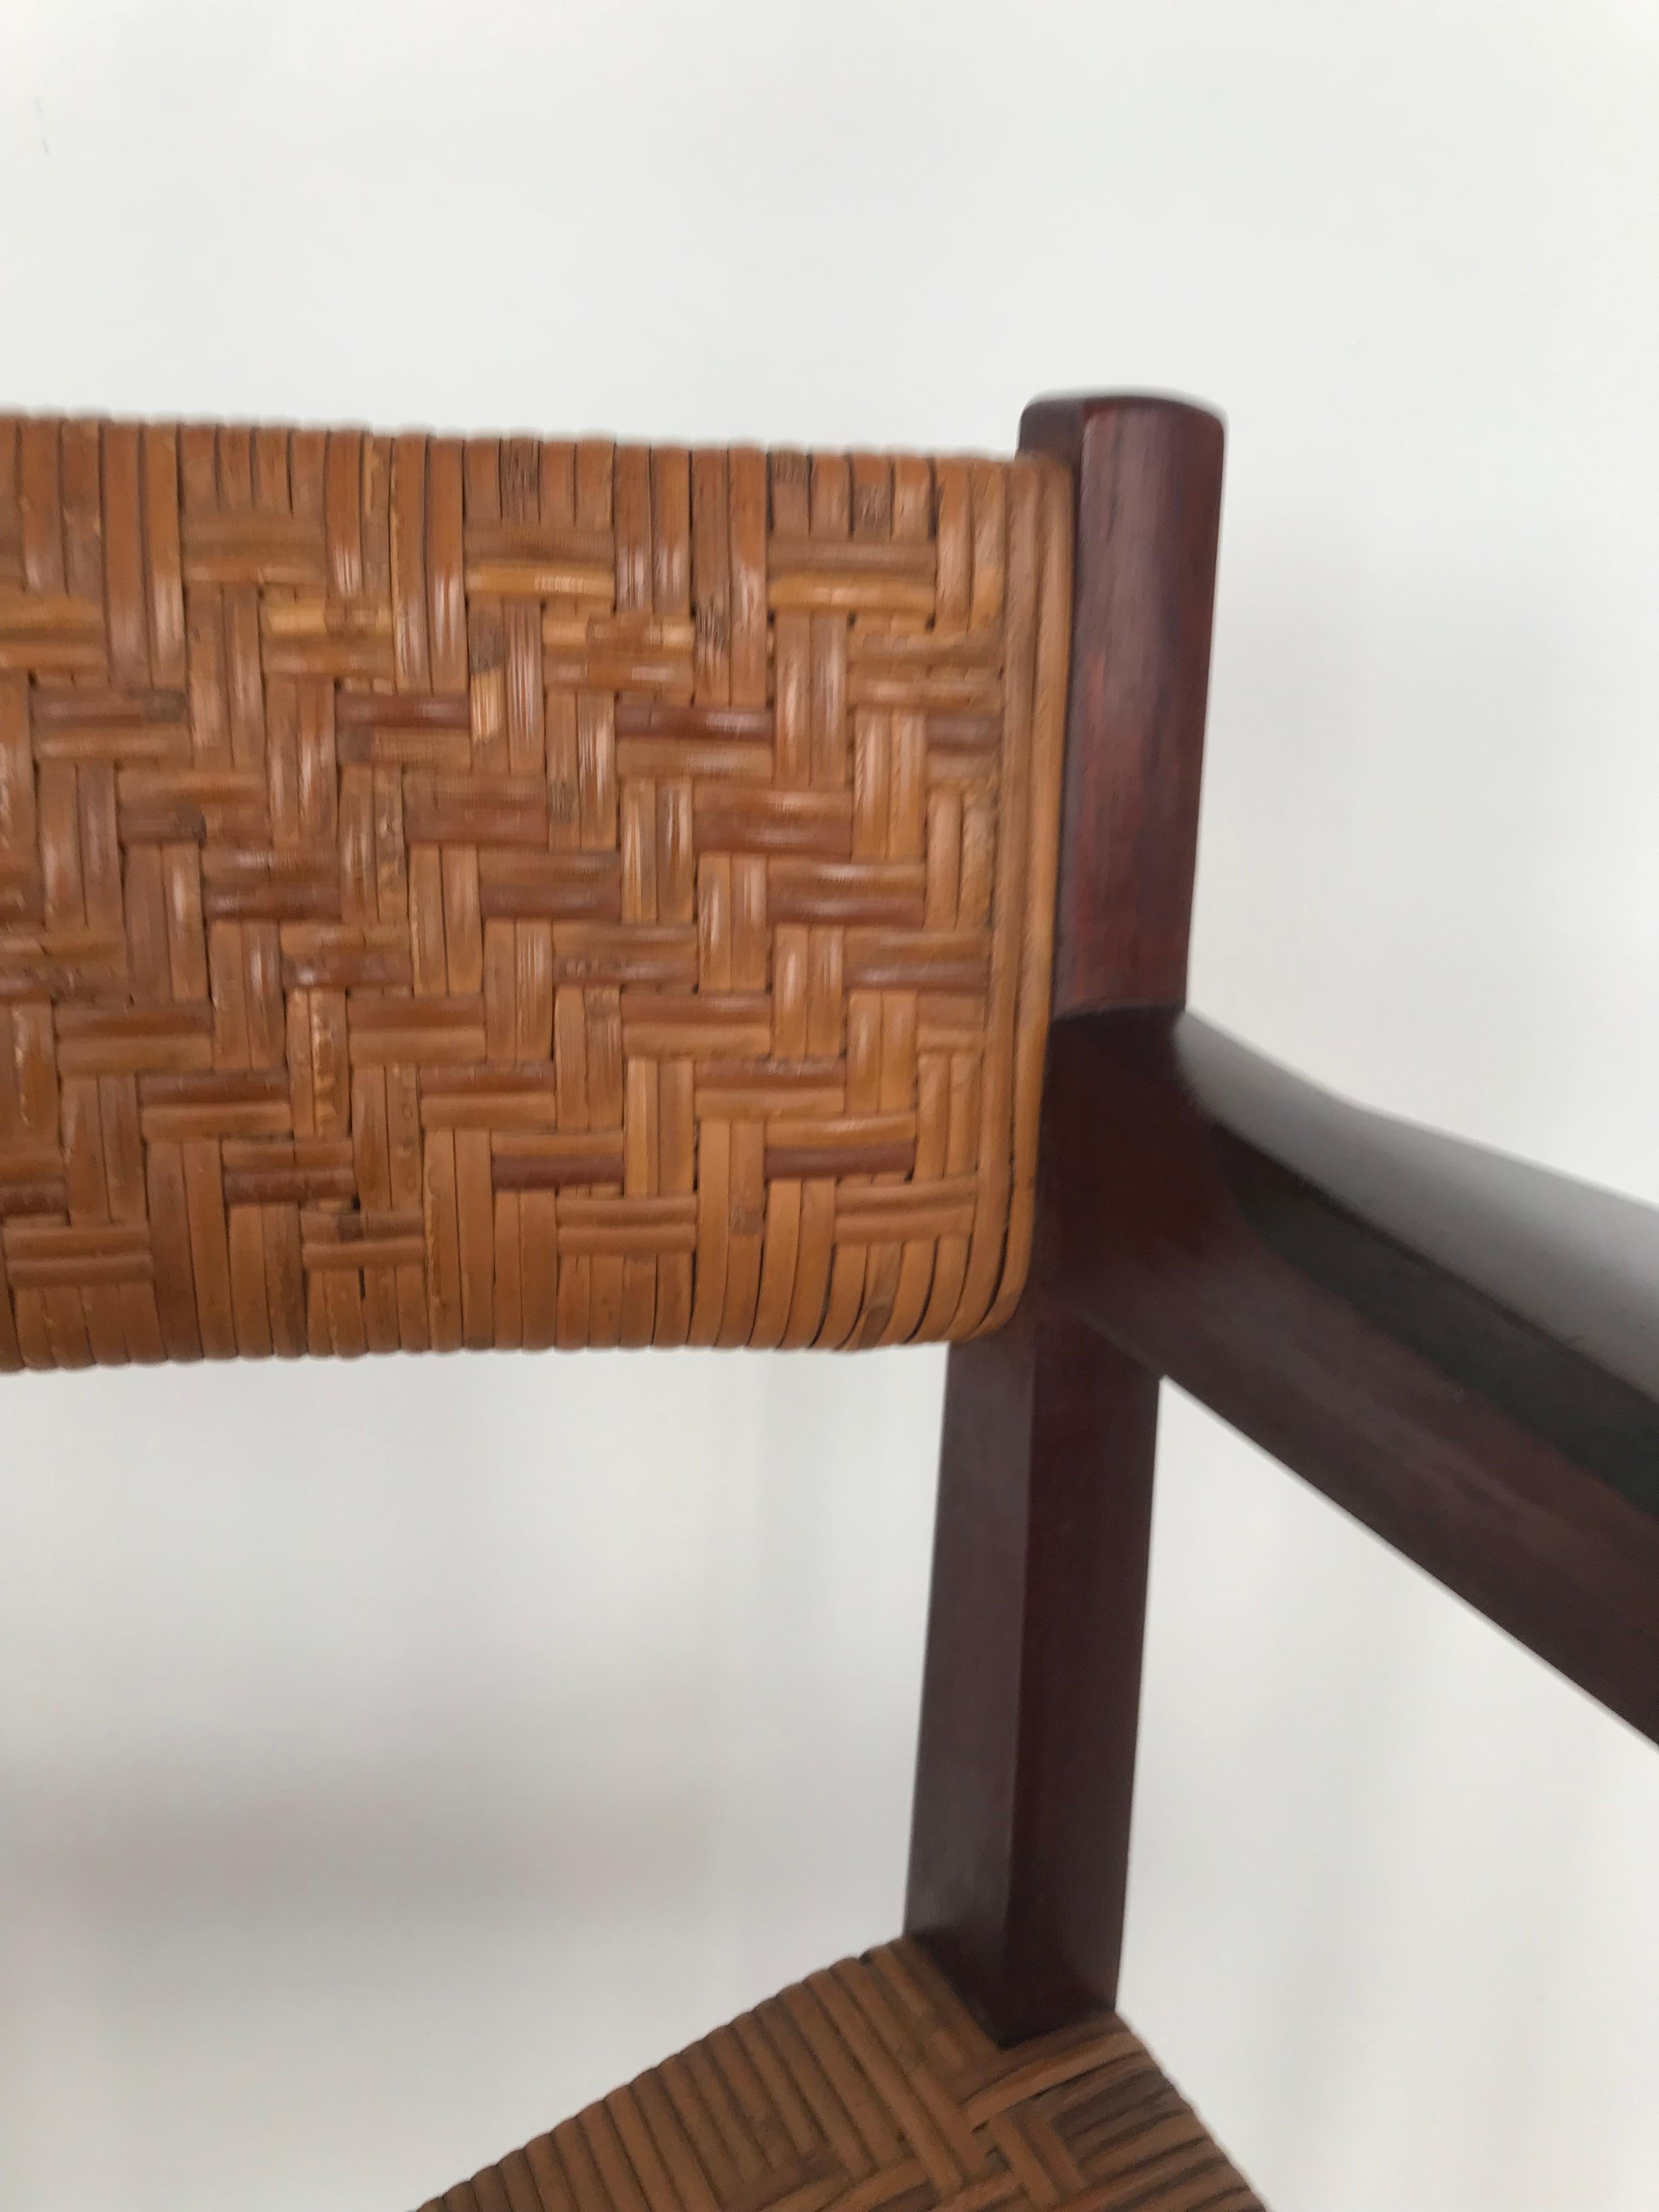 Hvidt & Orla Mølgaard Scandinavian Midcentury Rattan Wood Chair Armchair 1960s For Sale 3